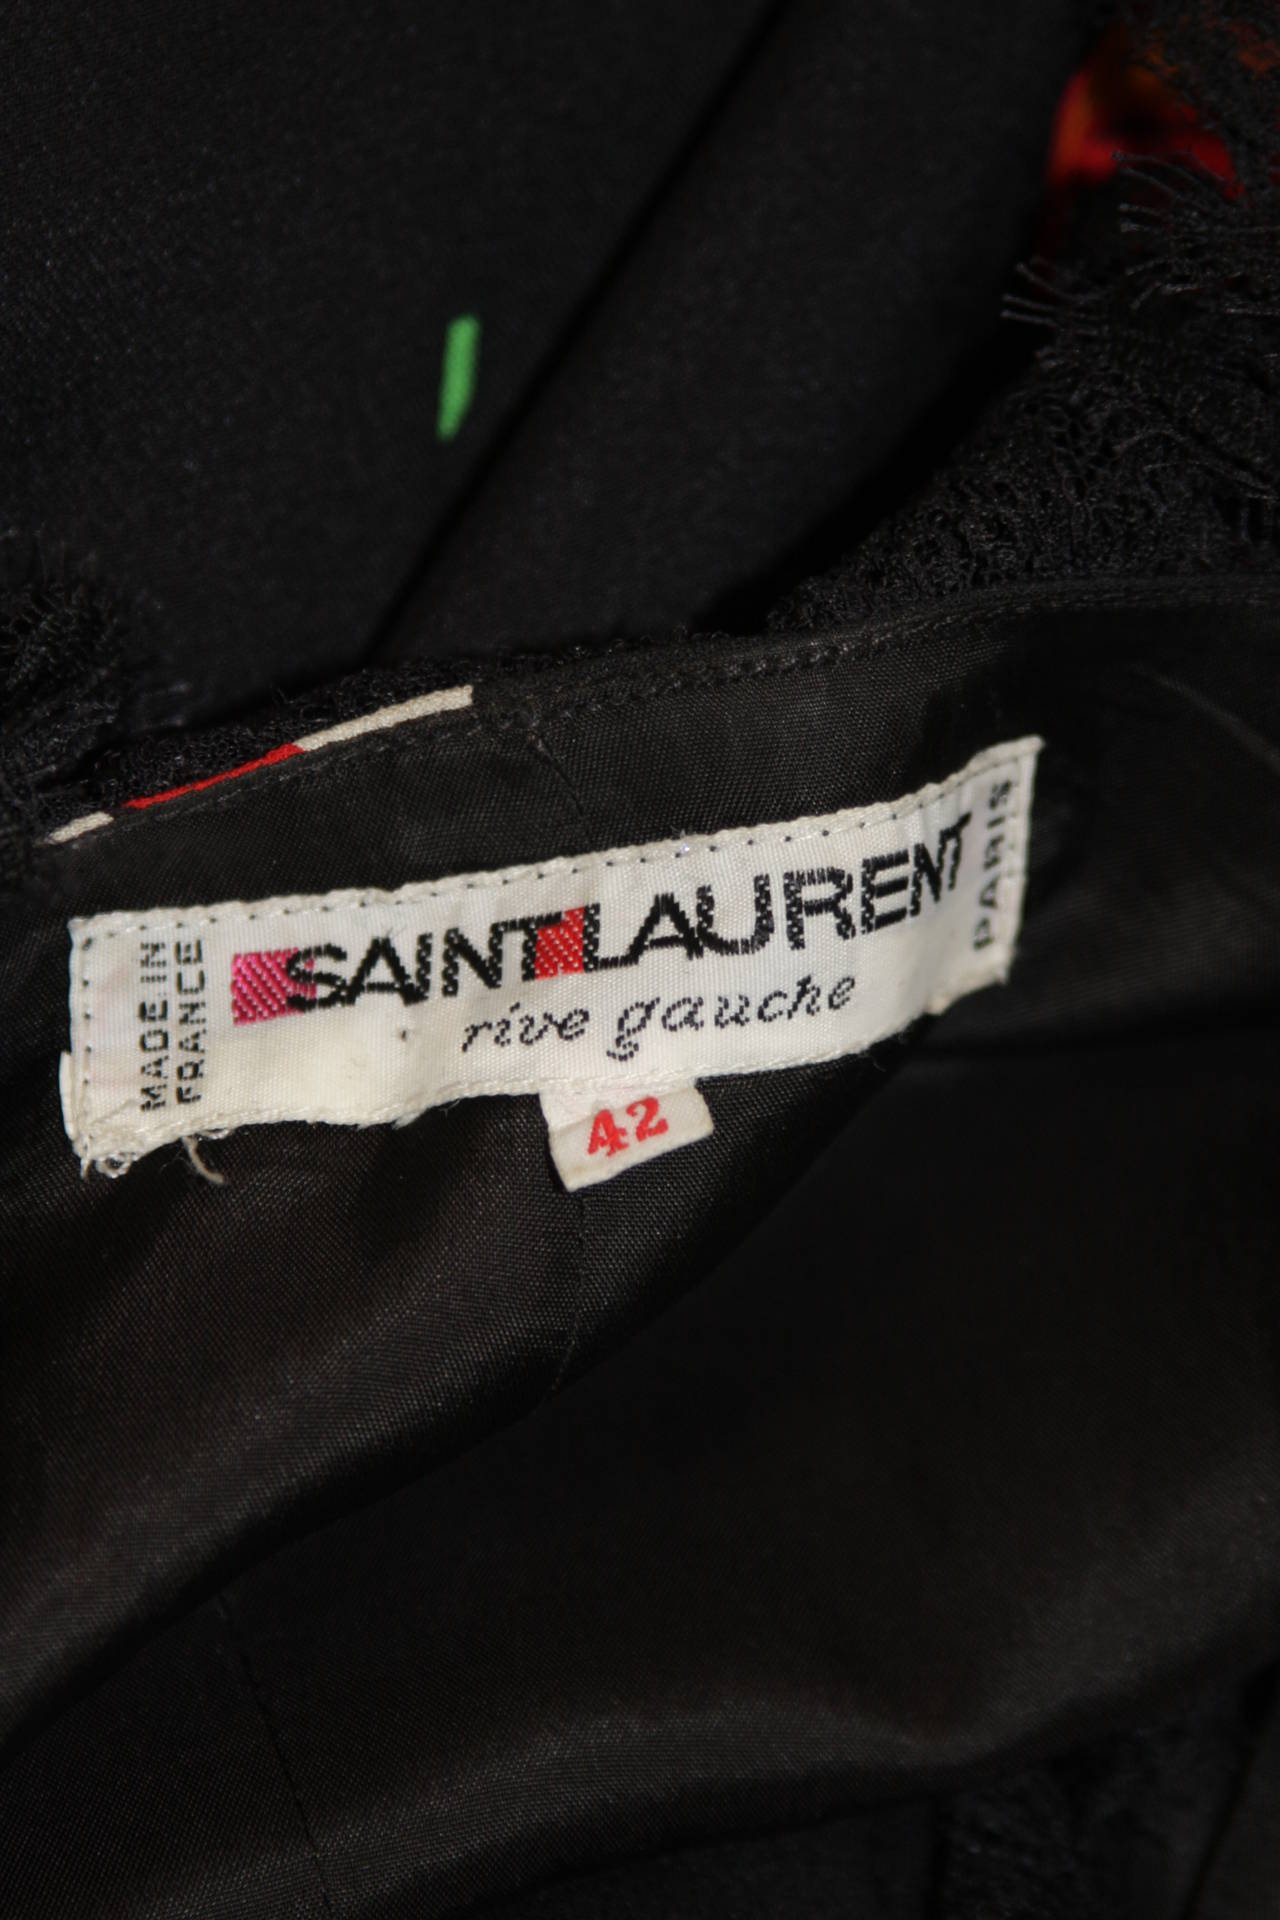 Saint Laurent Rive Gauche Black Crepe Floral Wrap Dress with Lace Trim Size 42 6